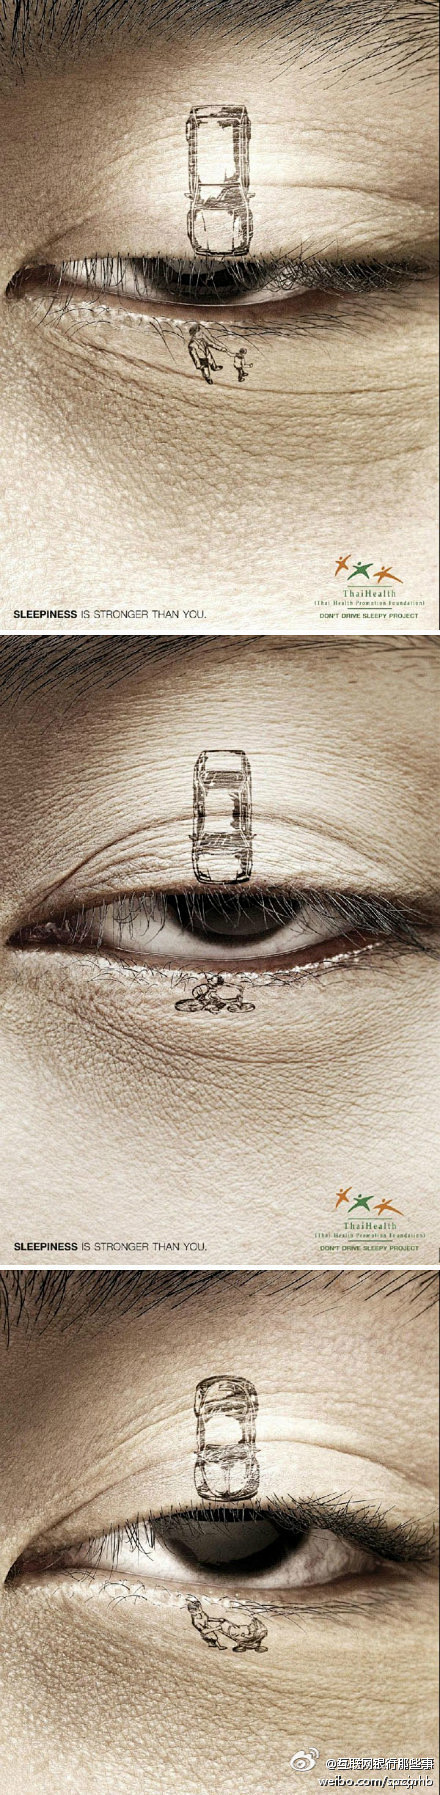 很赞的公益广告创意，请勿疲劳驾驶！